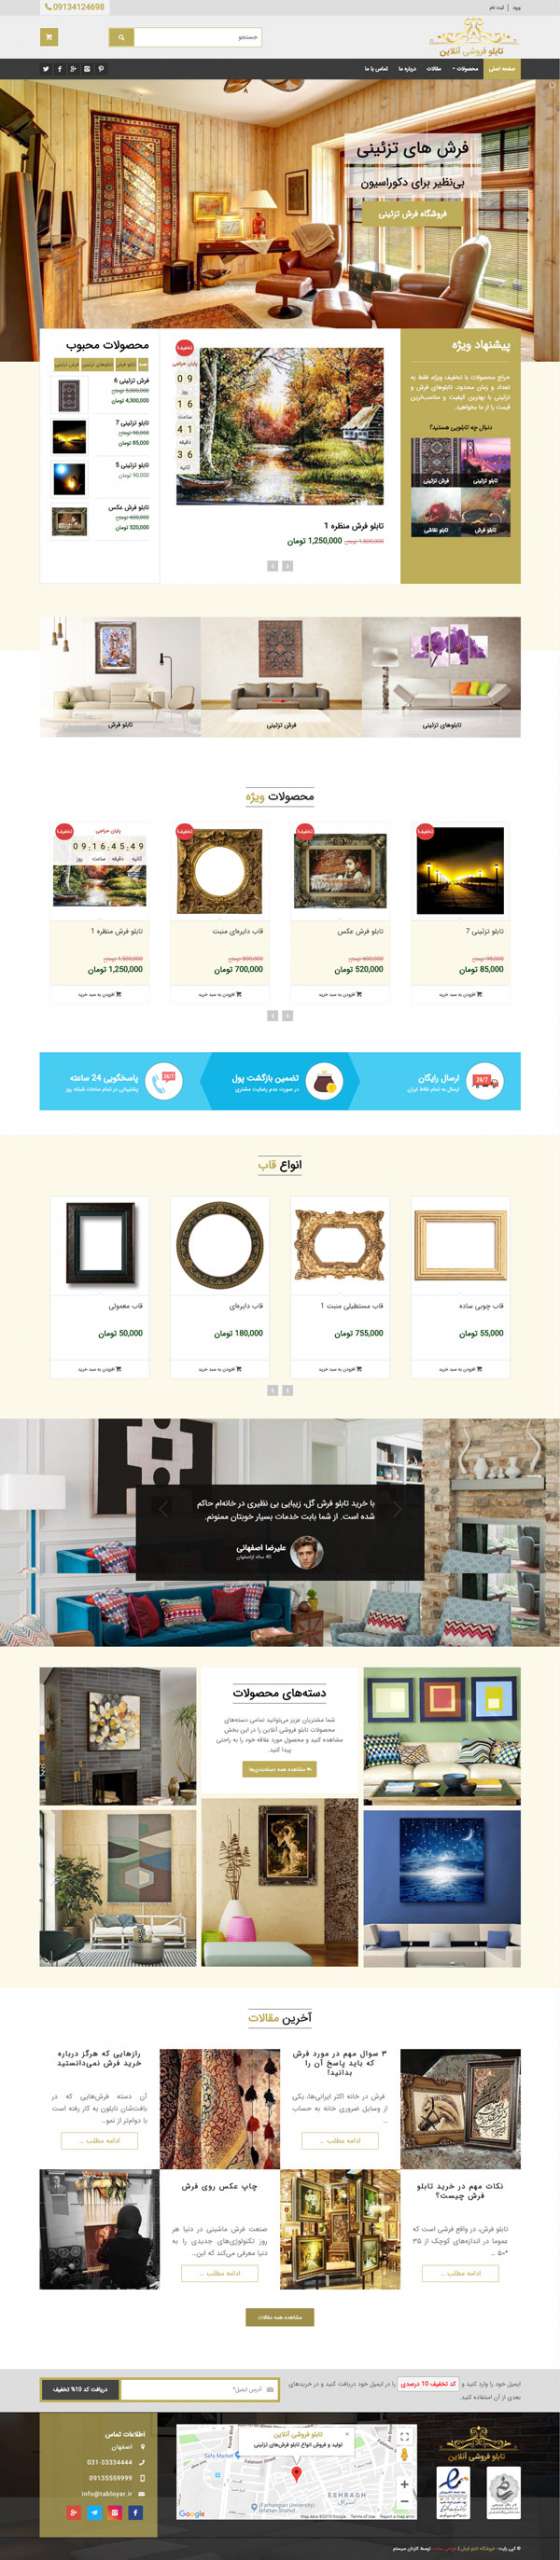 طراحی سایت تابلوکس | فروشگاه آنلاین تابلو فرش